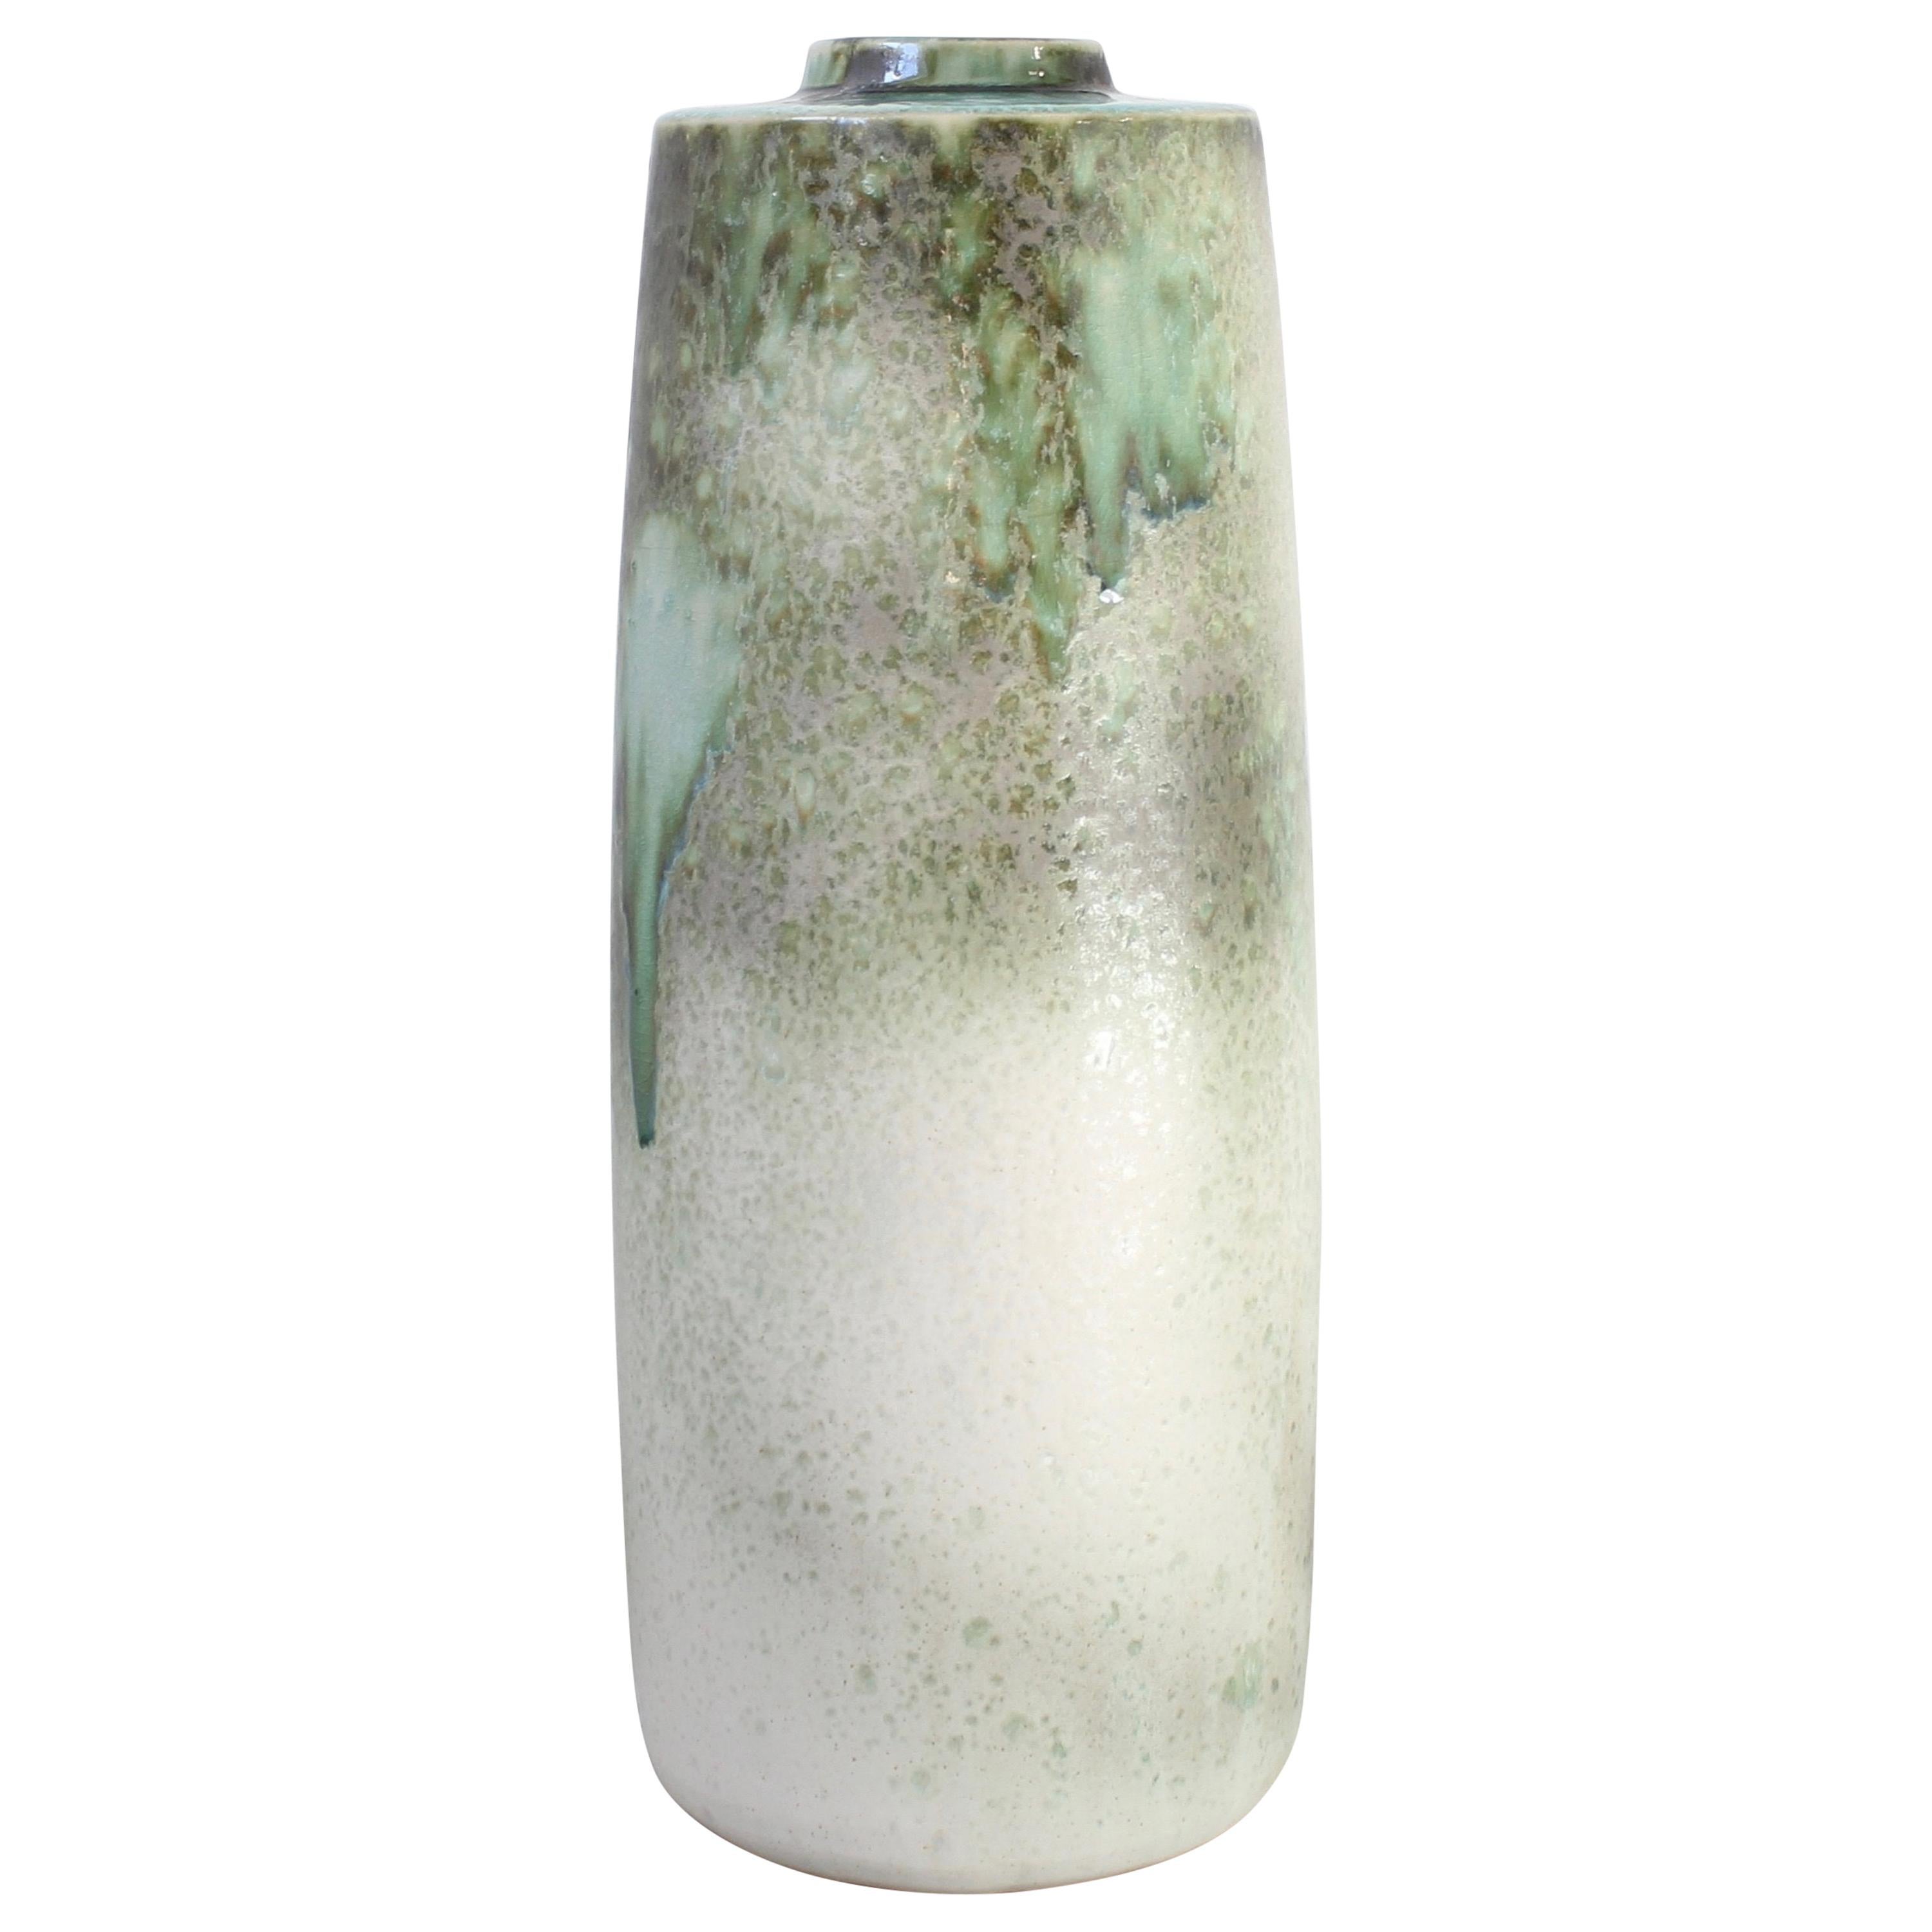 KH Würtz Giant Snub Nose Bottle Floor Vase in Green Glaze